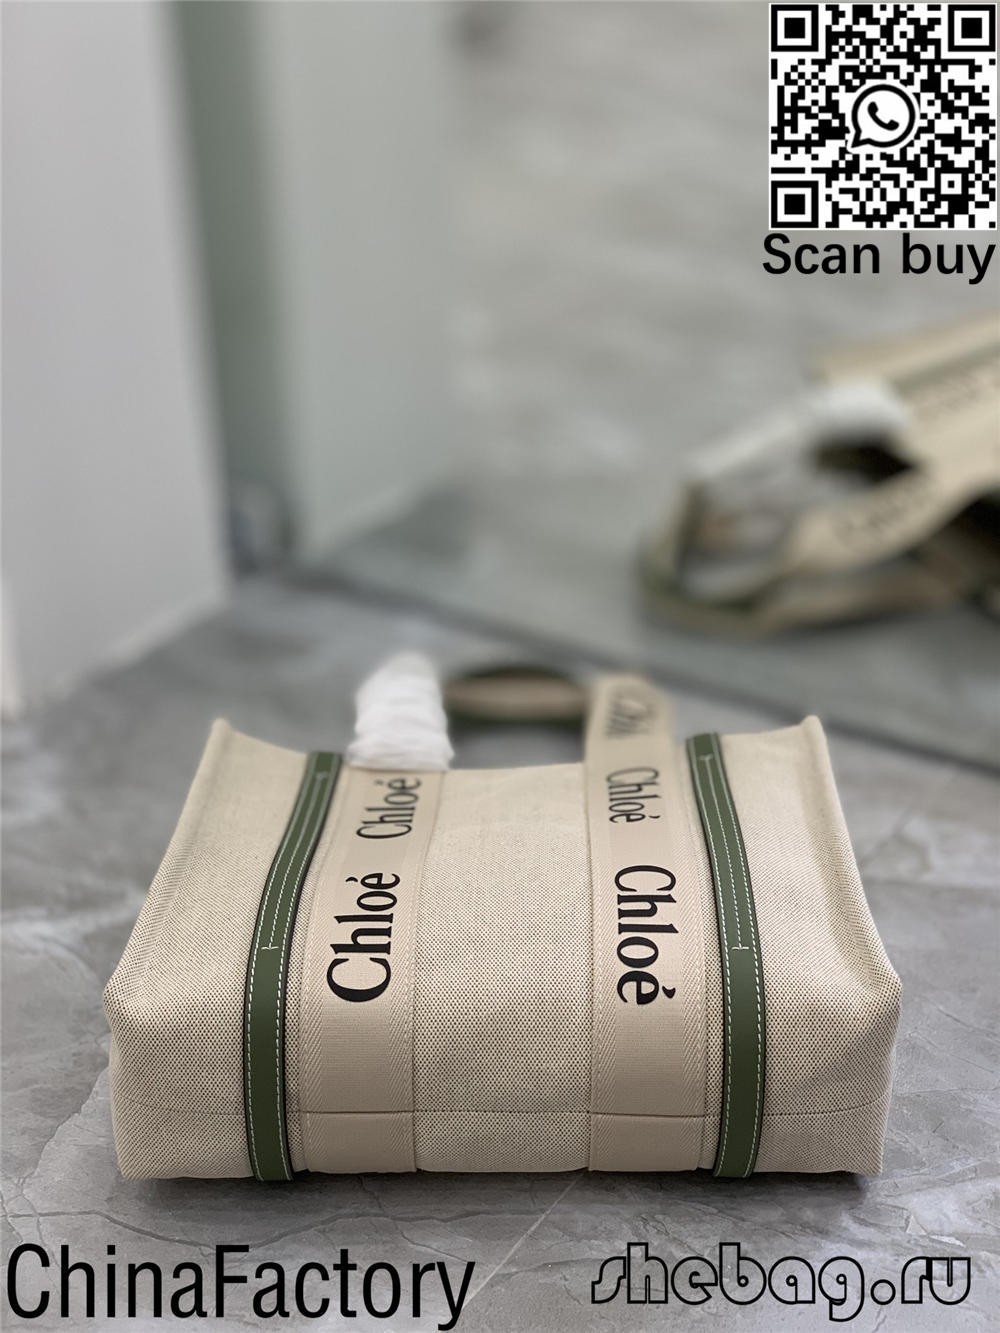 Com comprar la millor bossa de rèplica de Chloe a Nova York? (Actualitzat el 2022) - Botiga en línia de bosses de Louis Vuitton falses de millor qualitat, rèplica de bosses de disseny ru